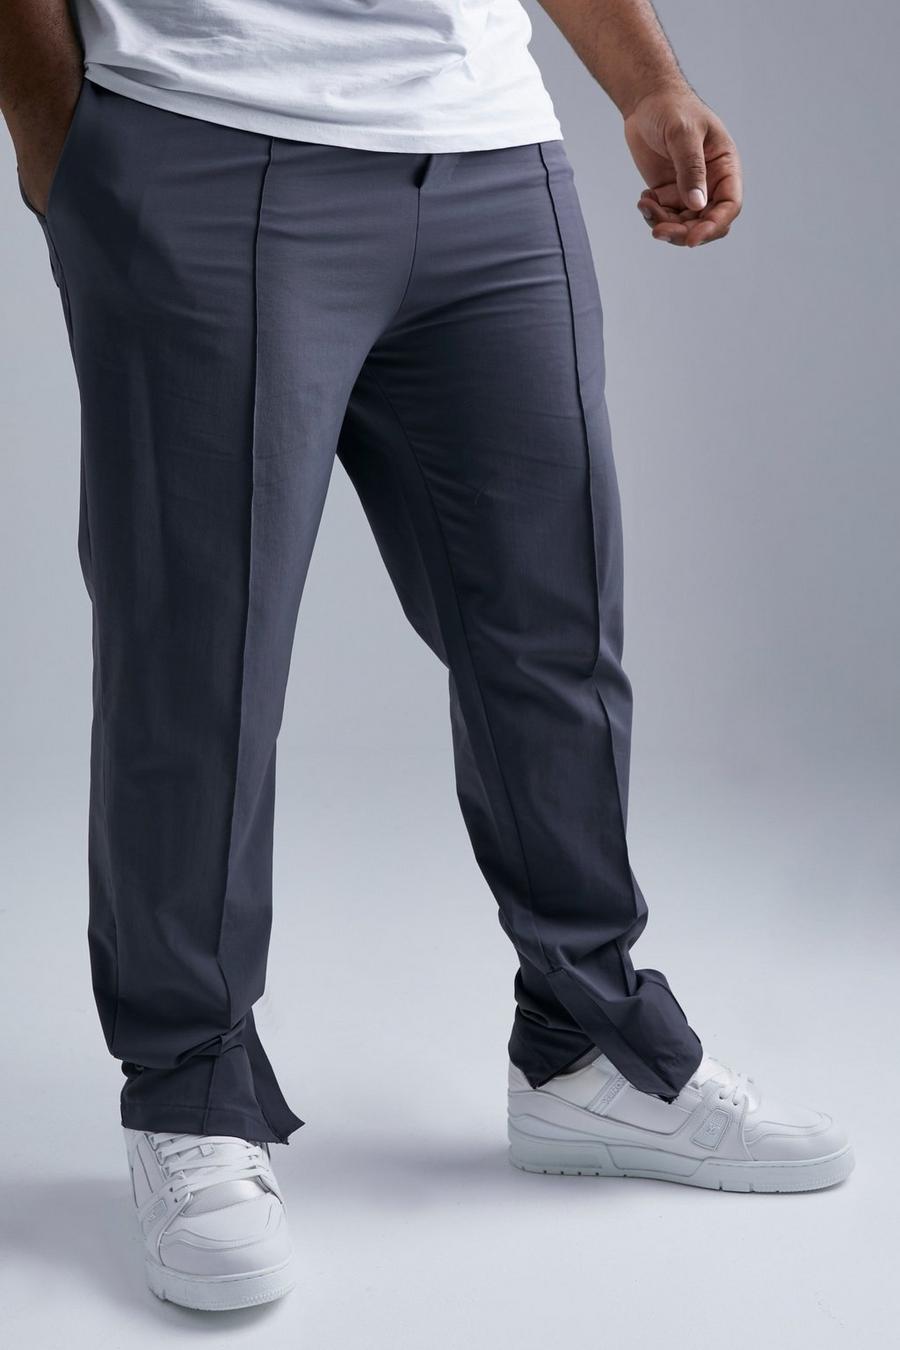 Plus Slim-Fit Hose mit 4-Way Stretch, Dark grey grau